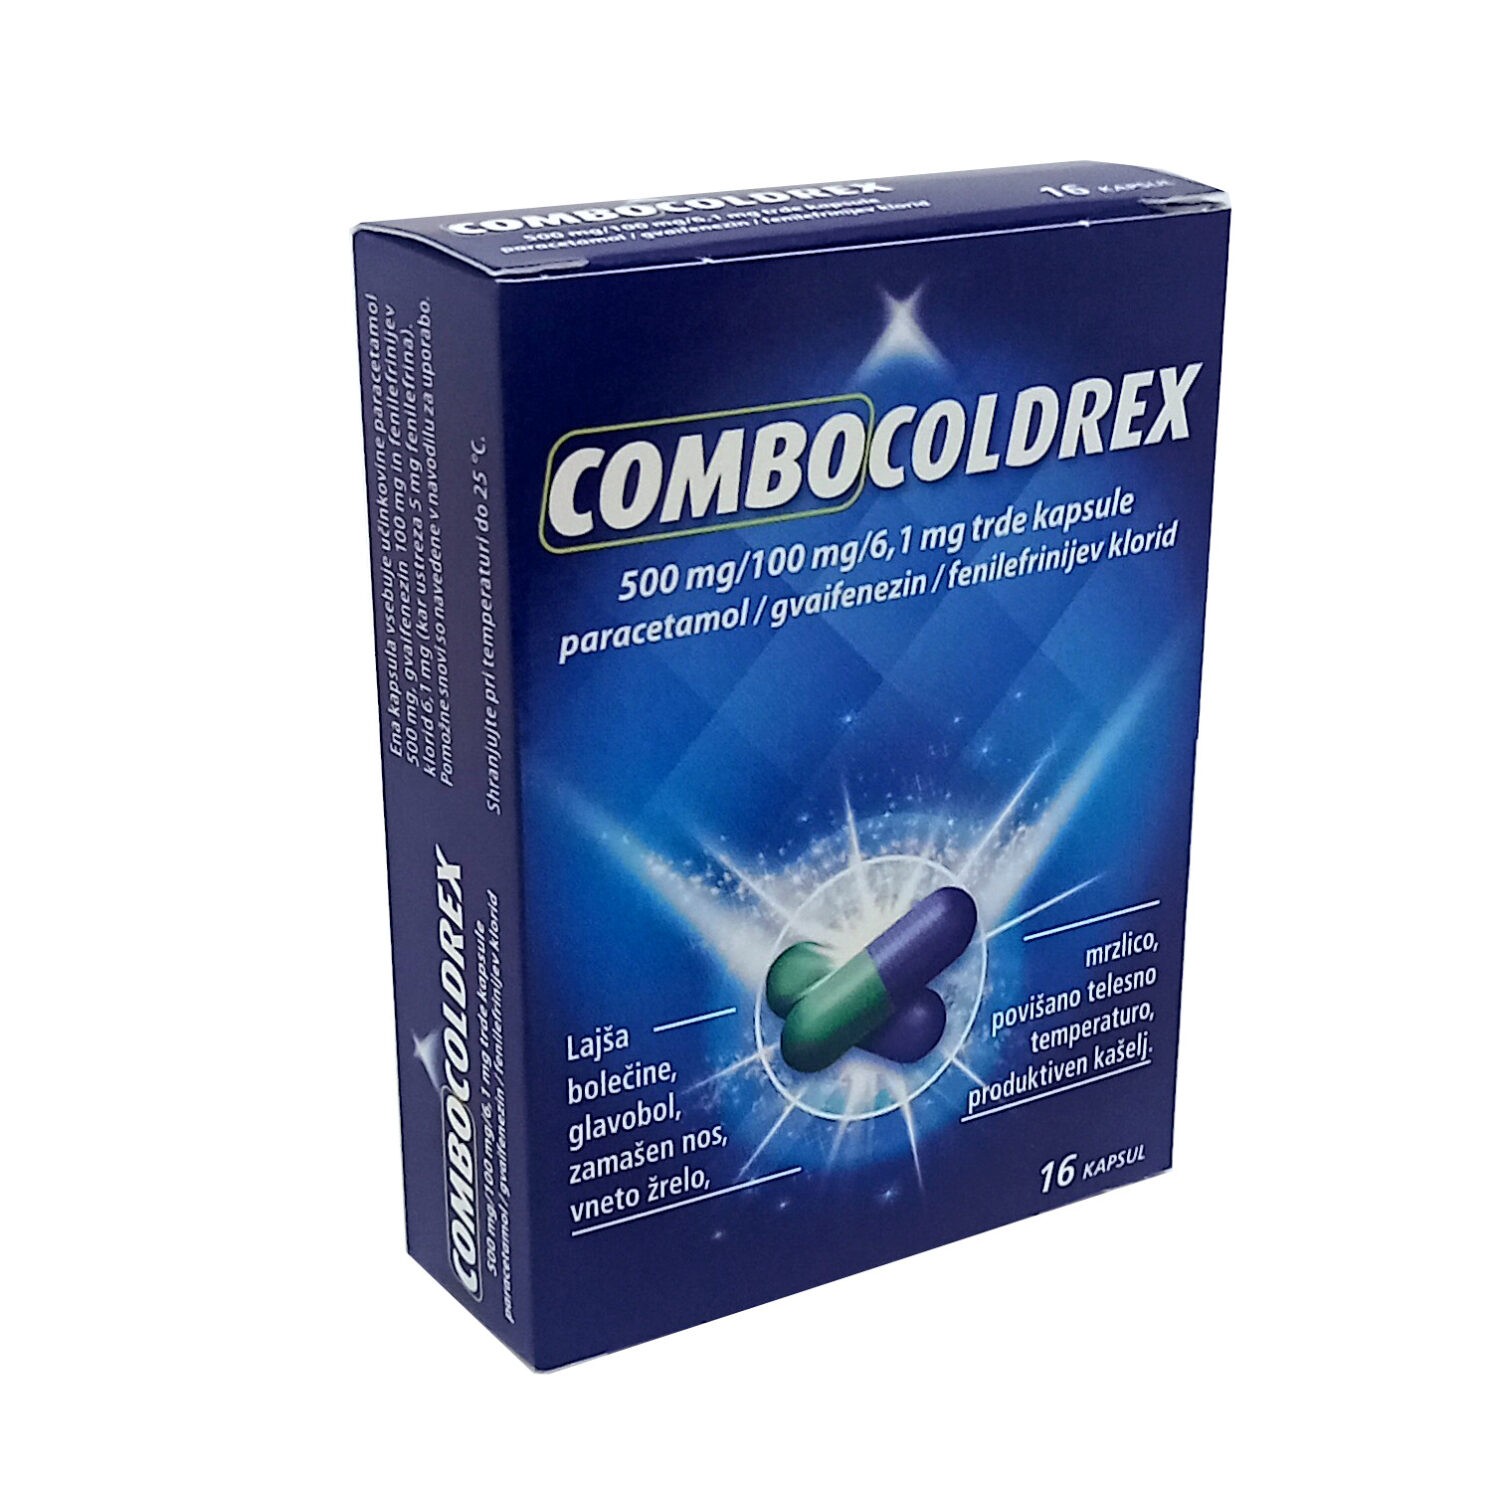 Combocoldrex 500 mg/100 mg/6,1 mg trde kapsule, 16 kapsul